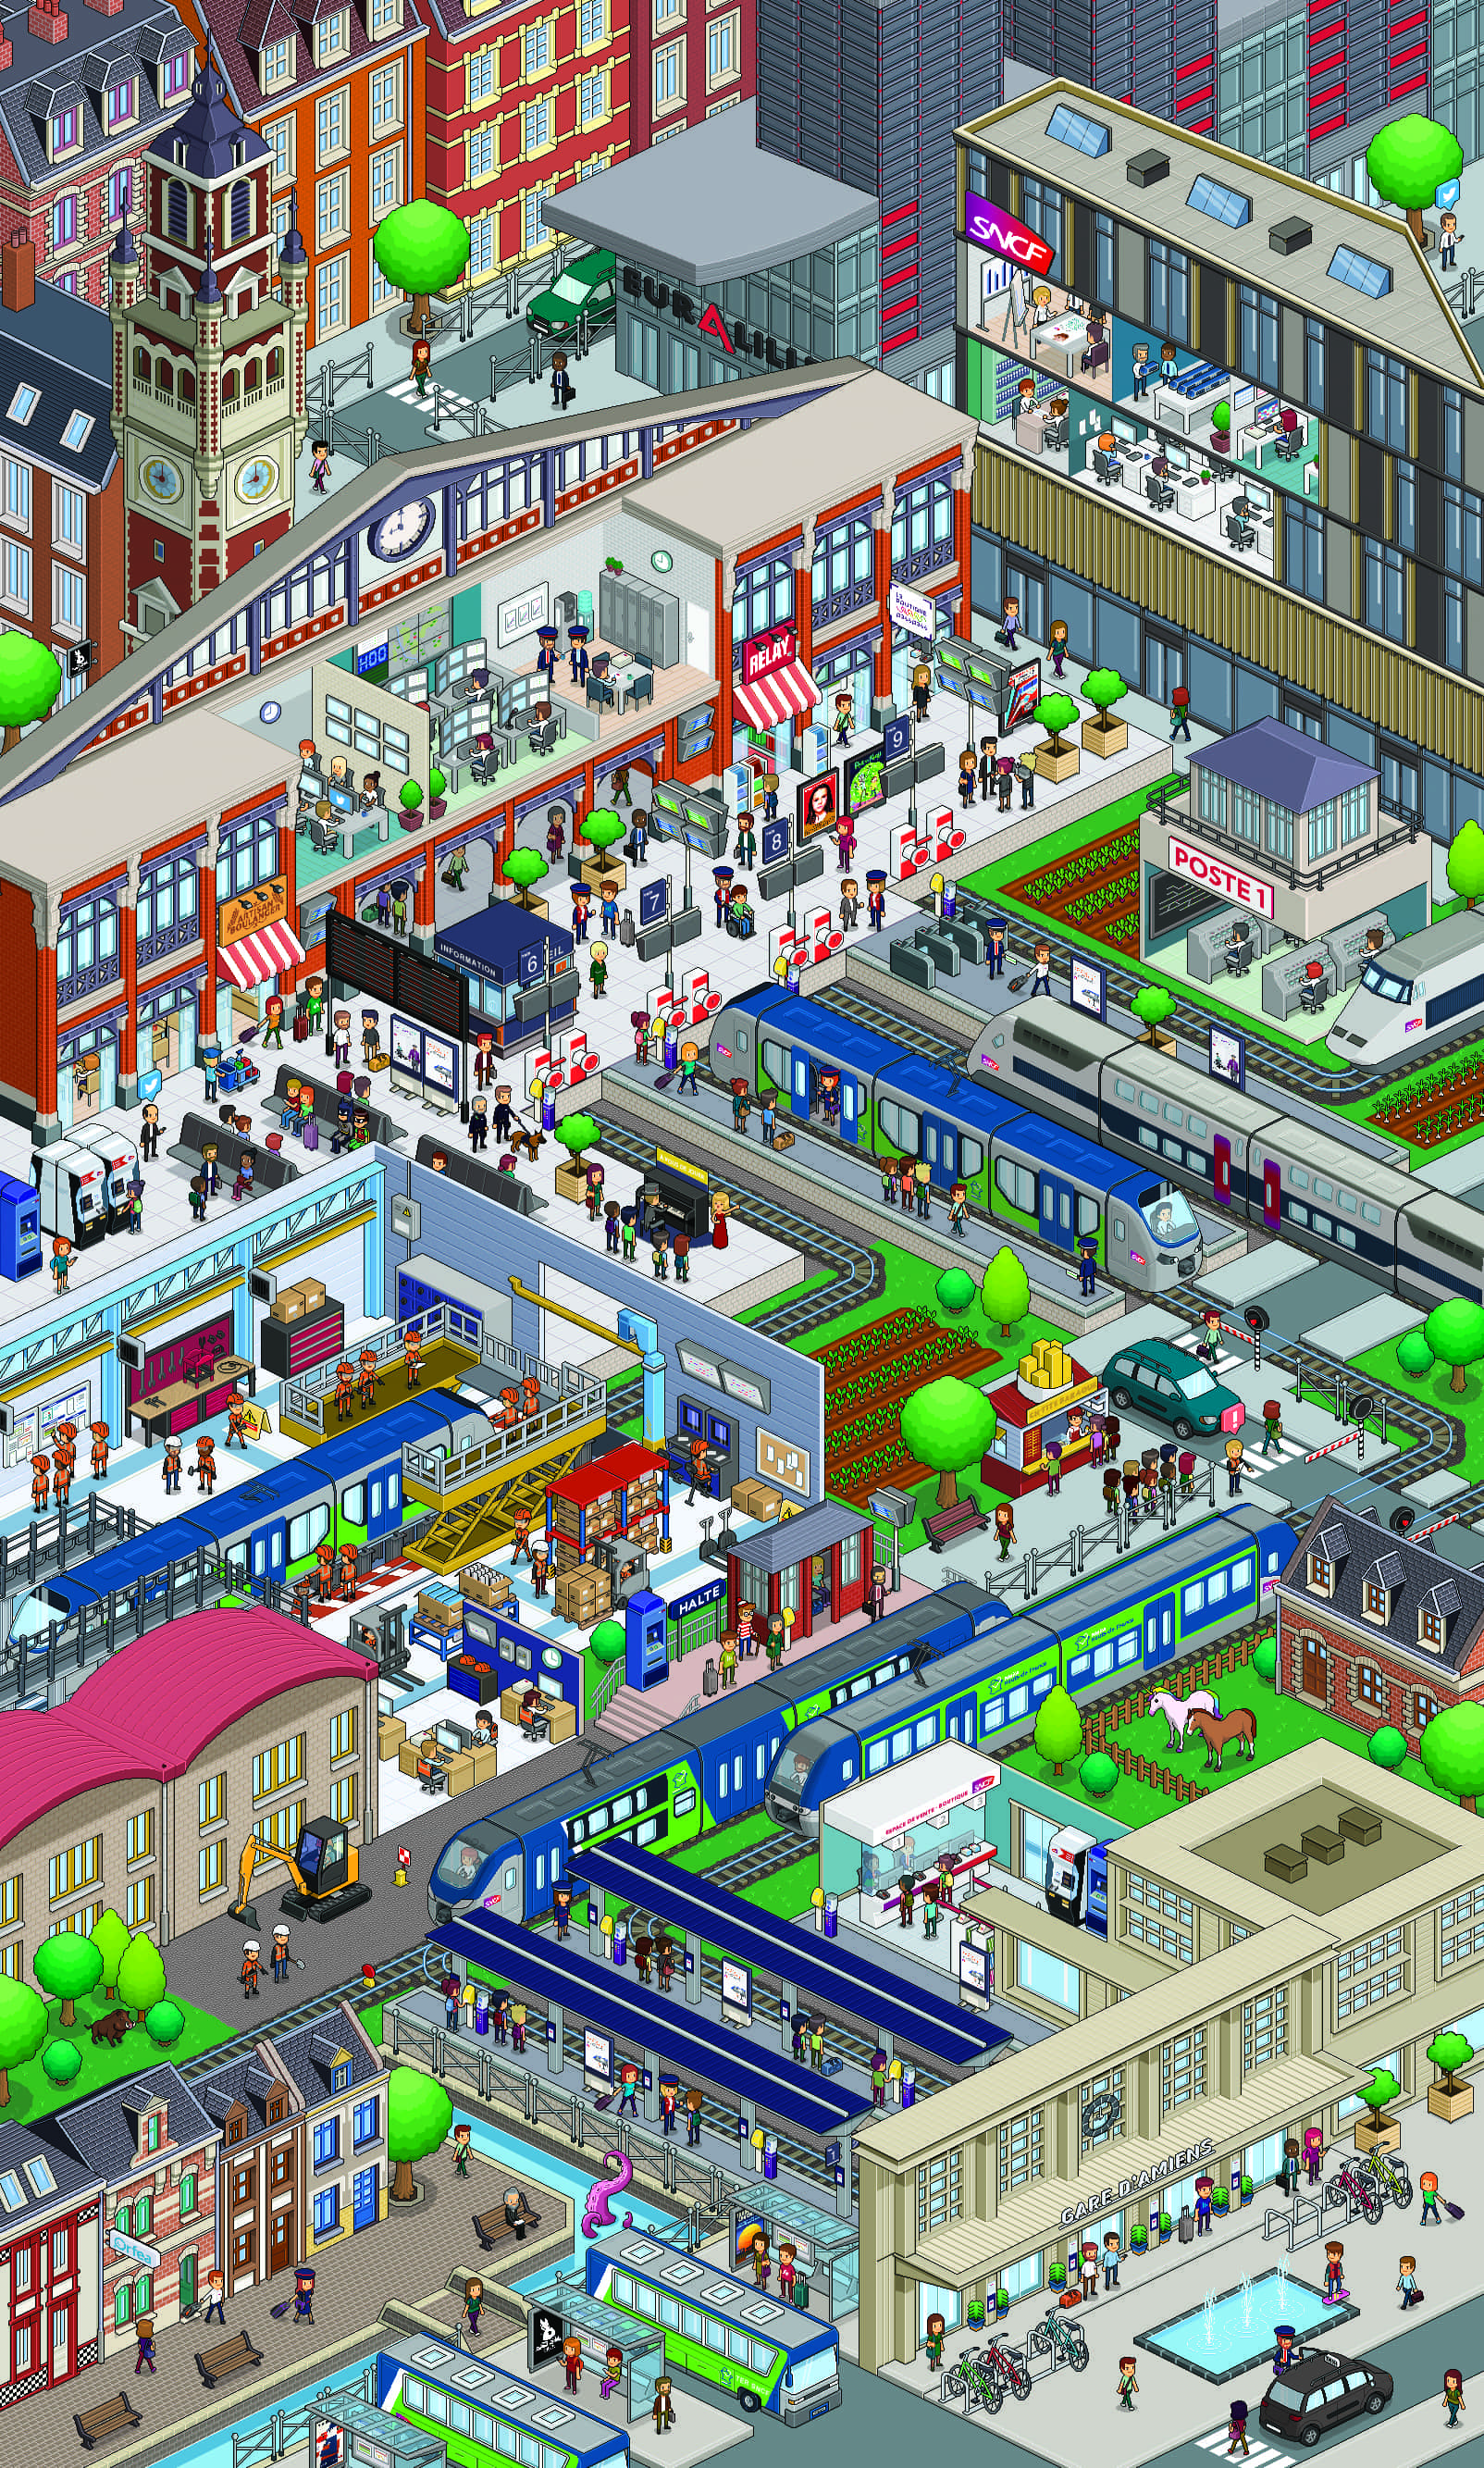 poster dans un style pixel art représentant une ville avec 2 gares